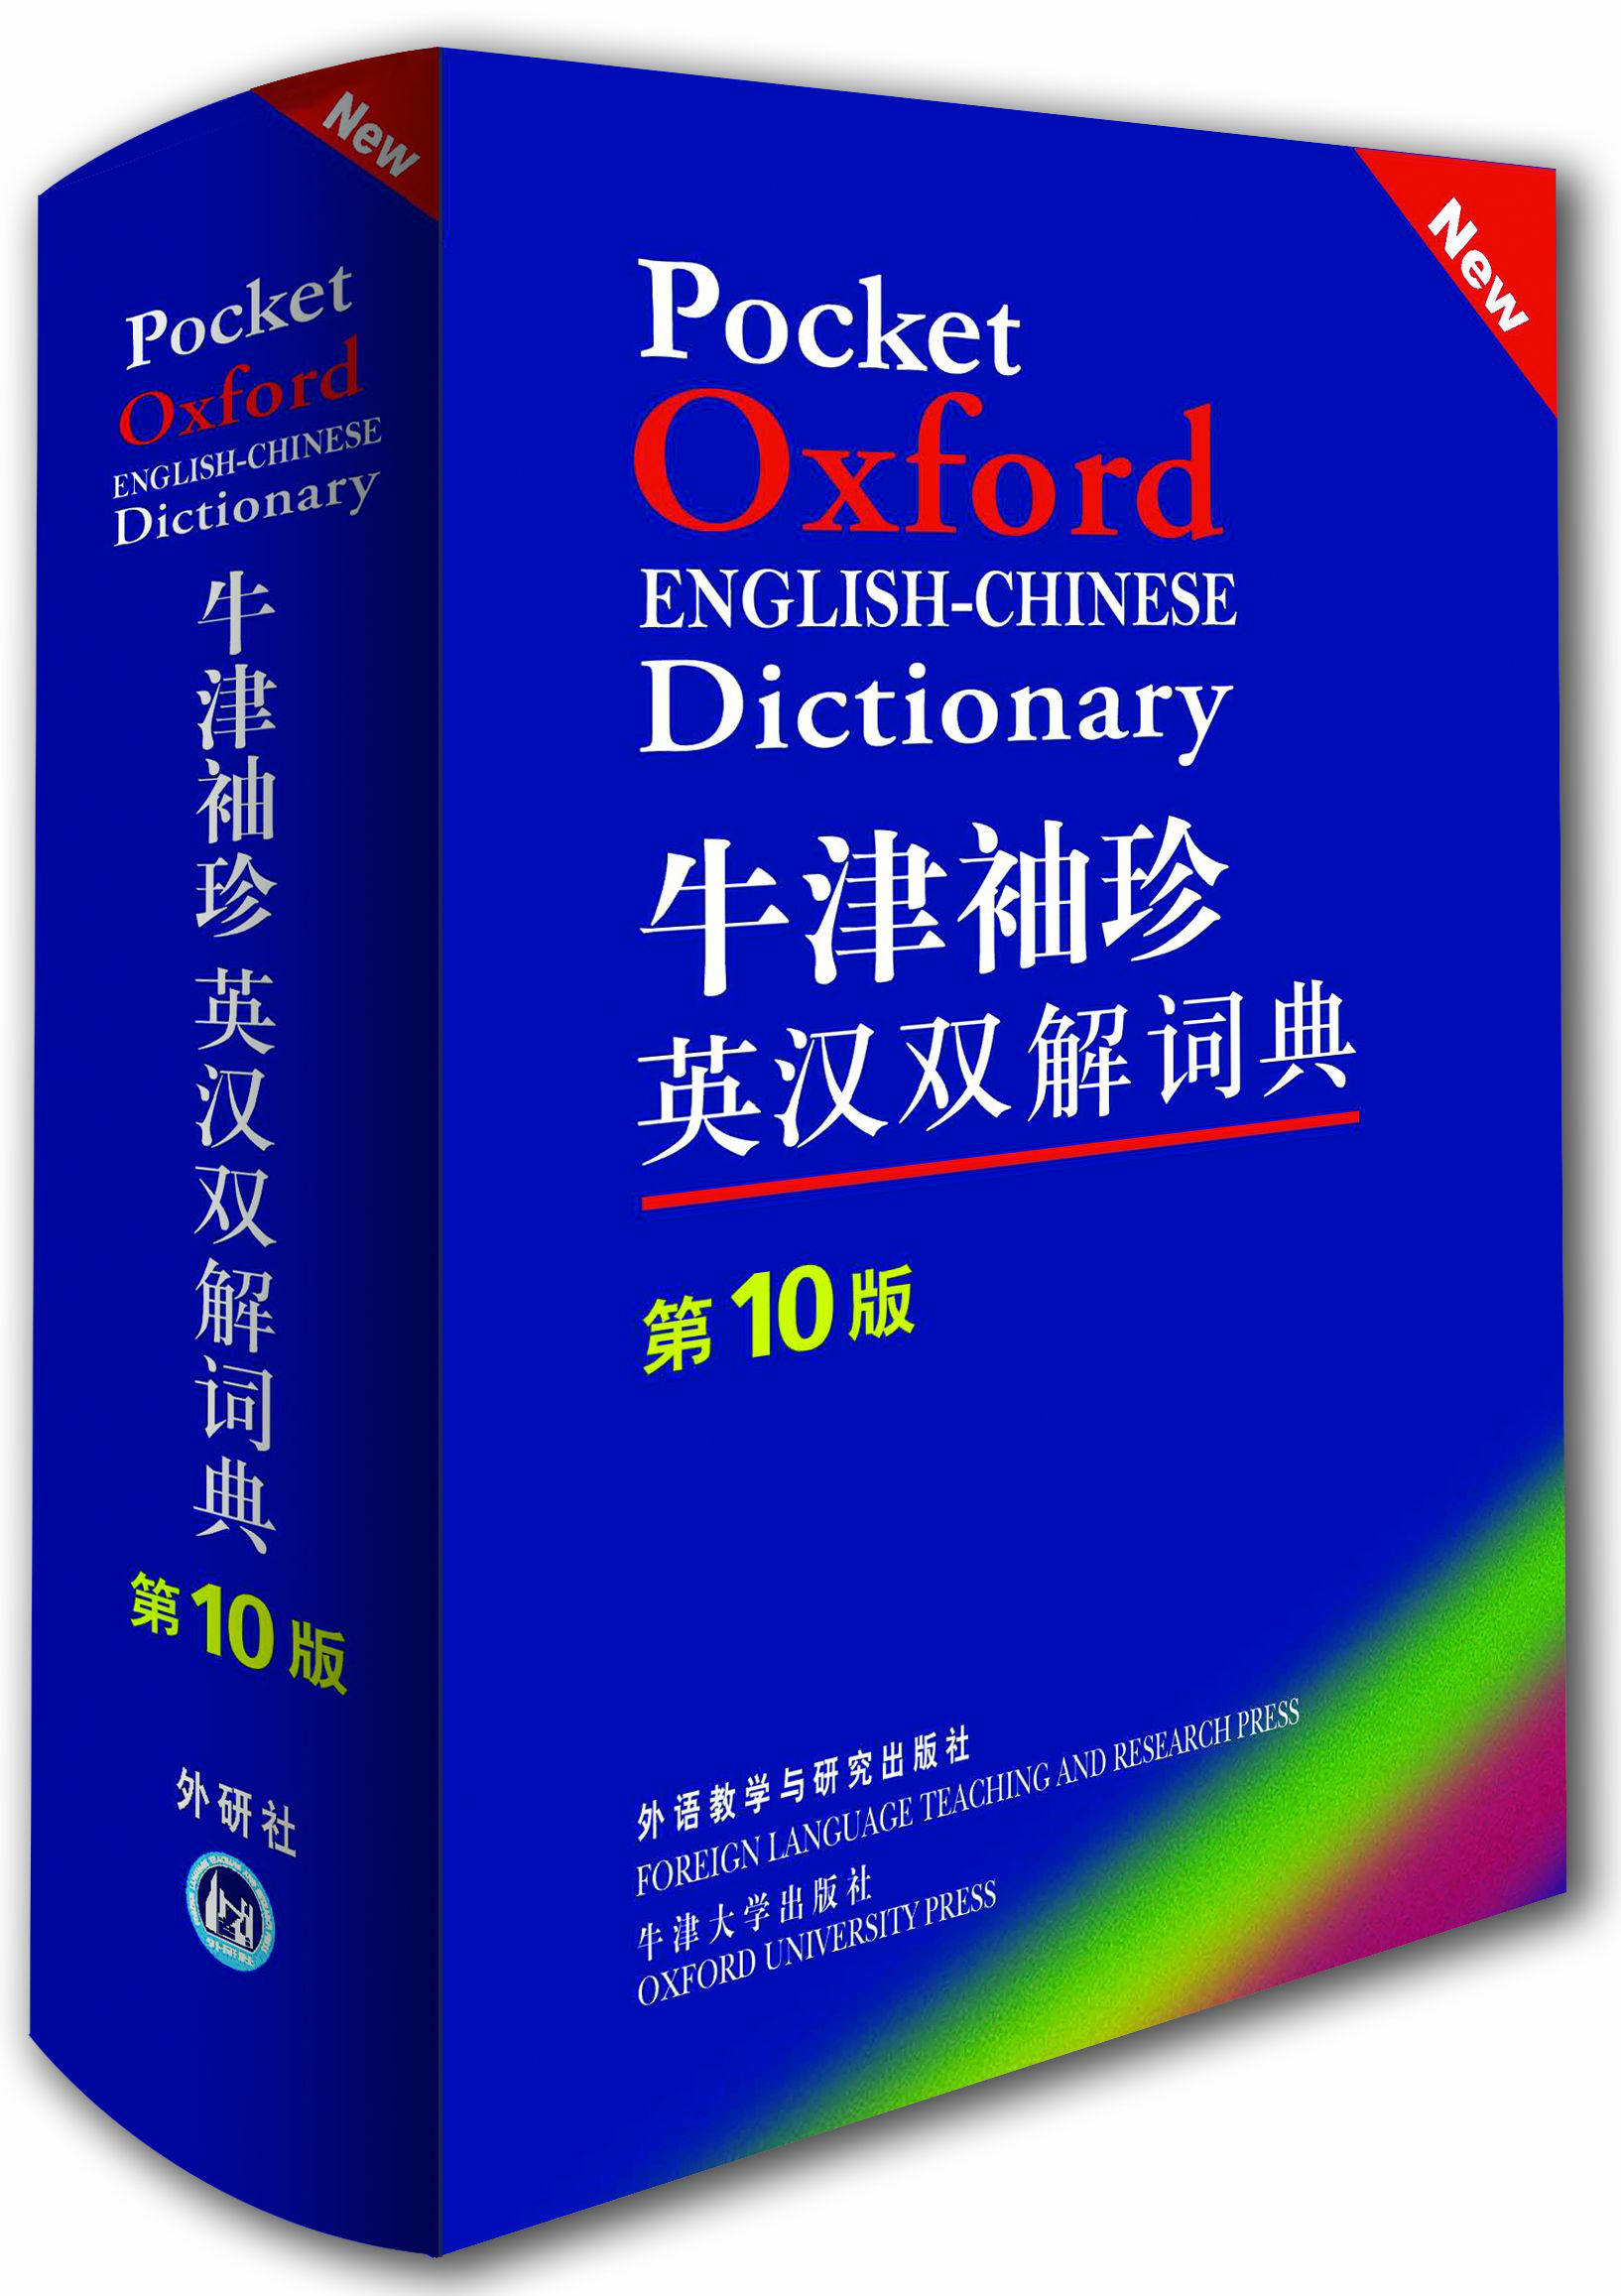 推荐一些俄语词典 - 知乎